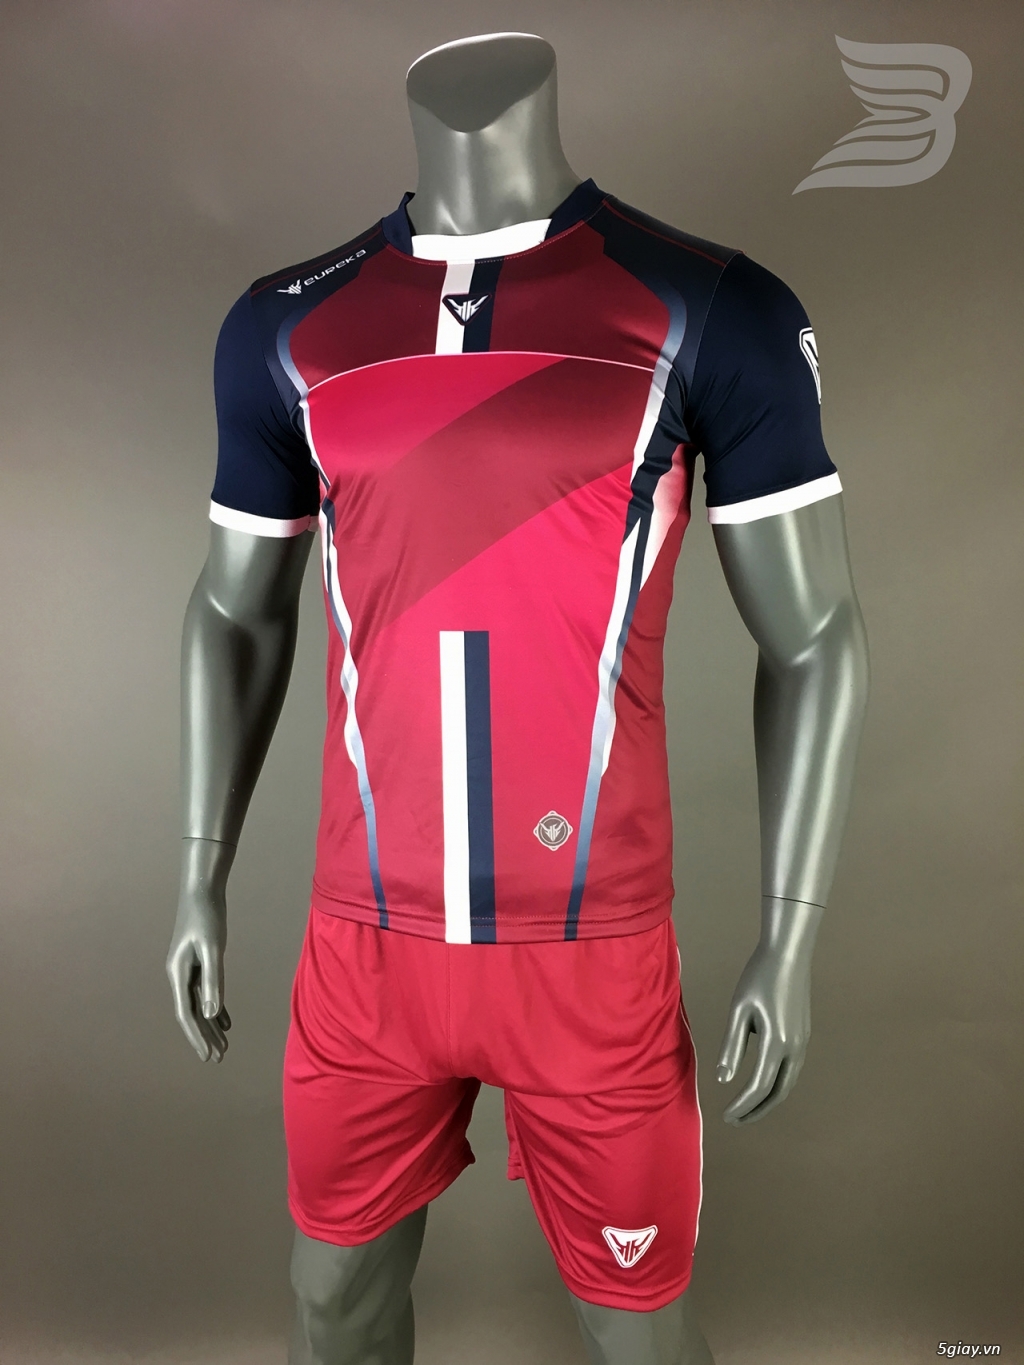 BẢO UYÊN SPORT - Chuyên cung cấp quần áo bóng đá với giá cạnh tranh kèm nhiều ưu đãi - 22